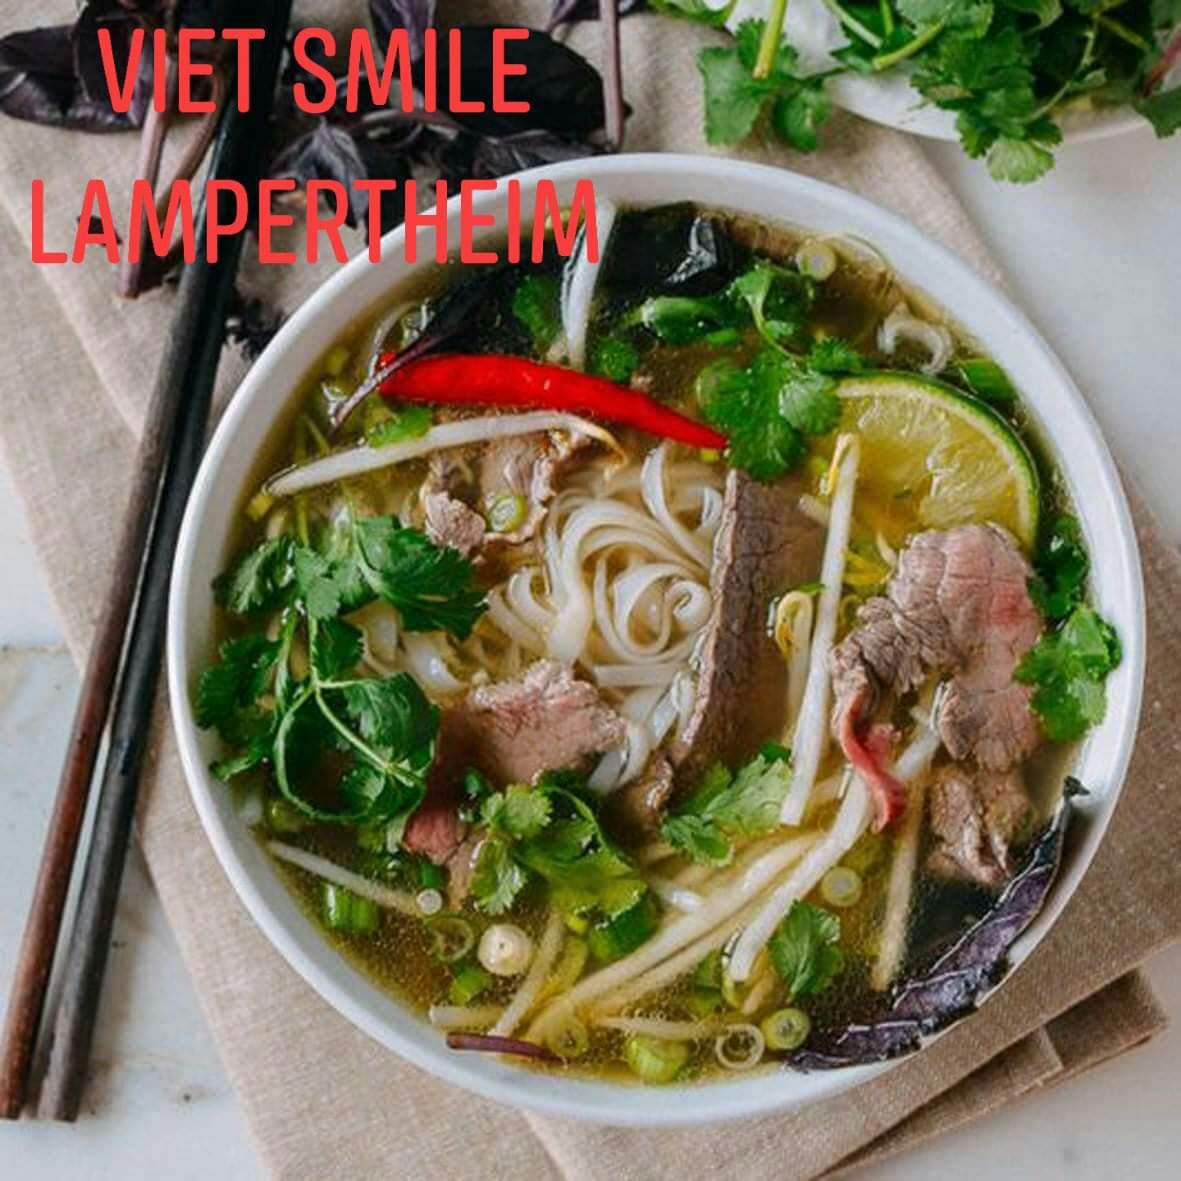 Restaurant "Viet Smile" in  Lampertheim